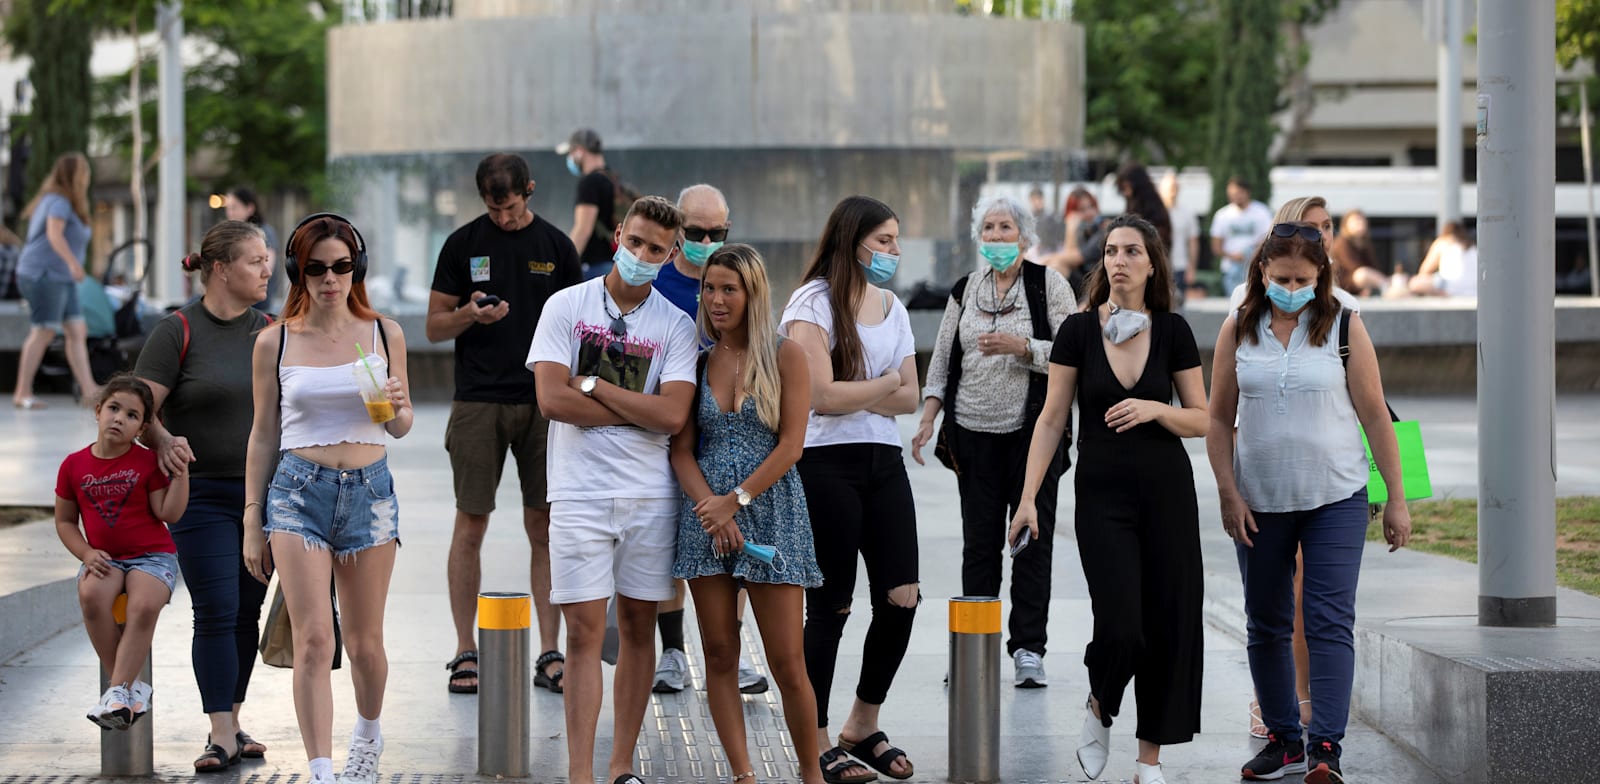 אנשים עוטים מסכות עומדים במעבר חצייה בתל אביב ביוני האחרון / צילום: Reuters, Amir Cohen